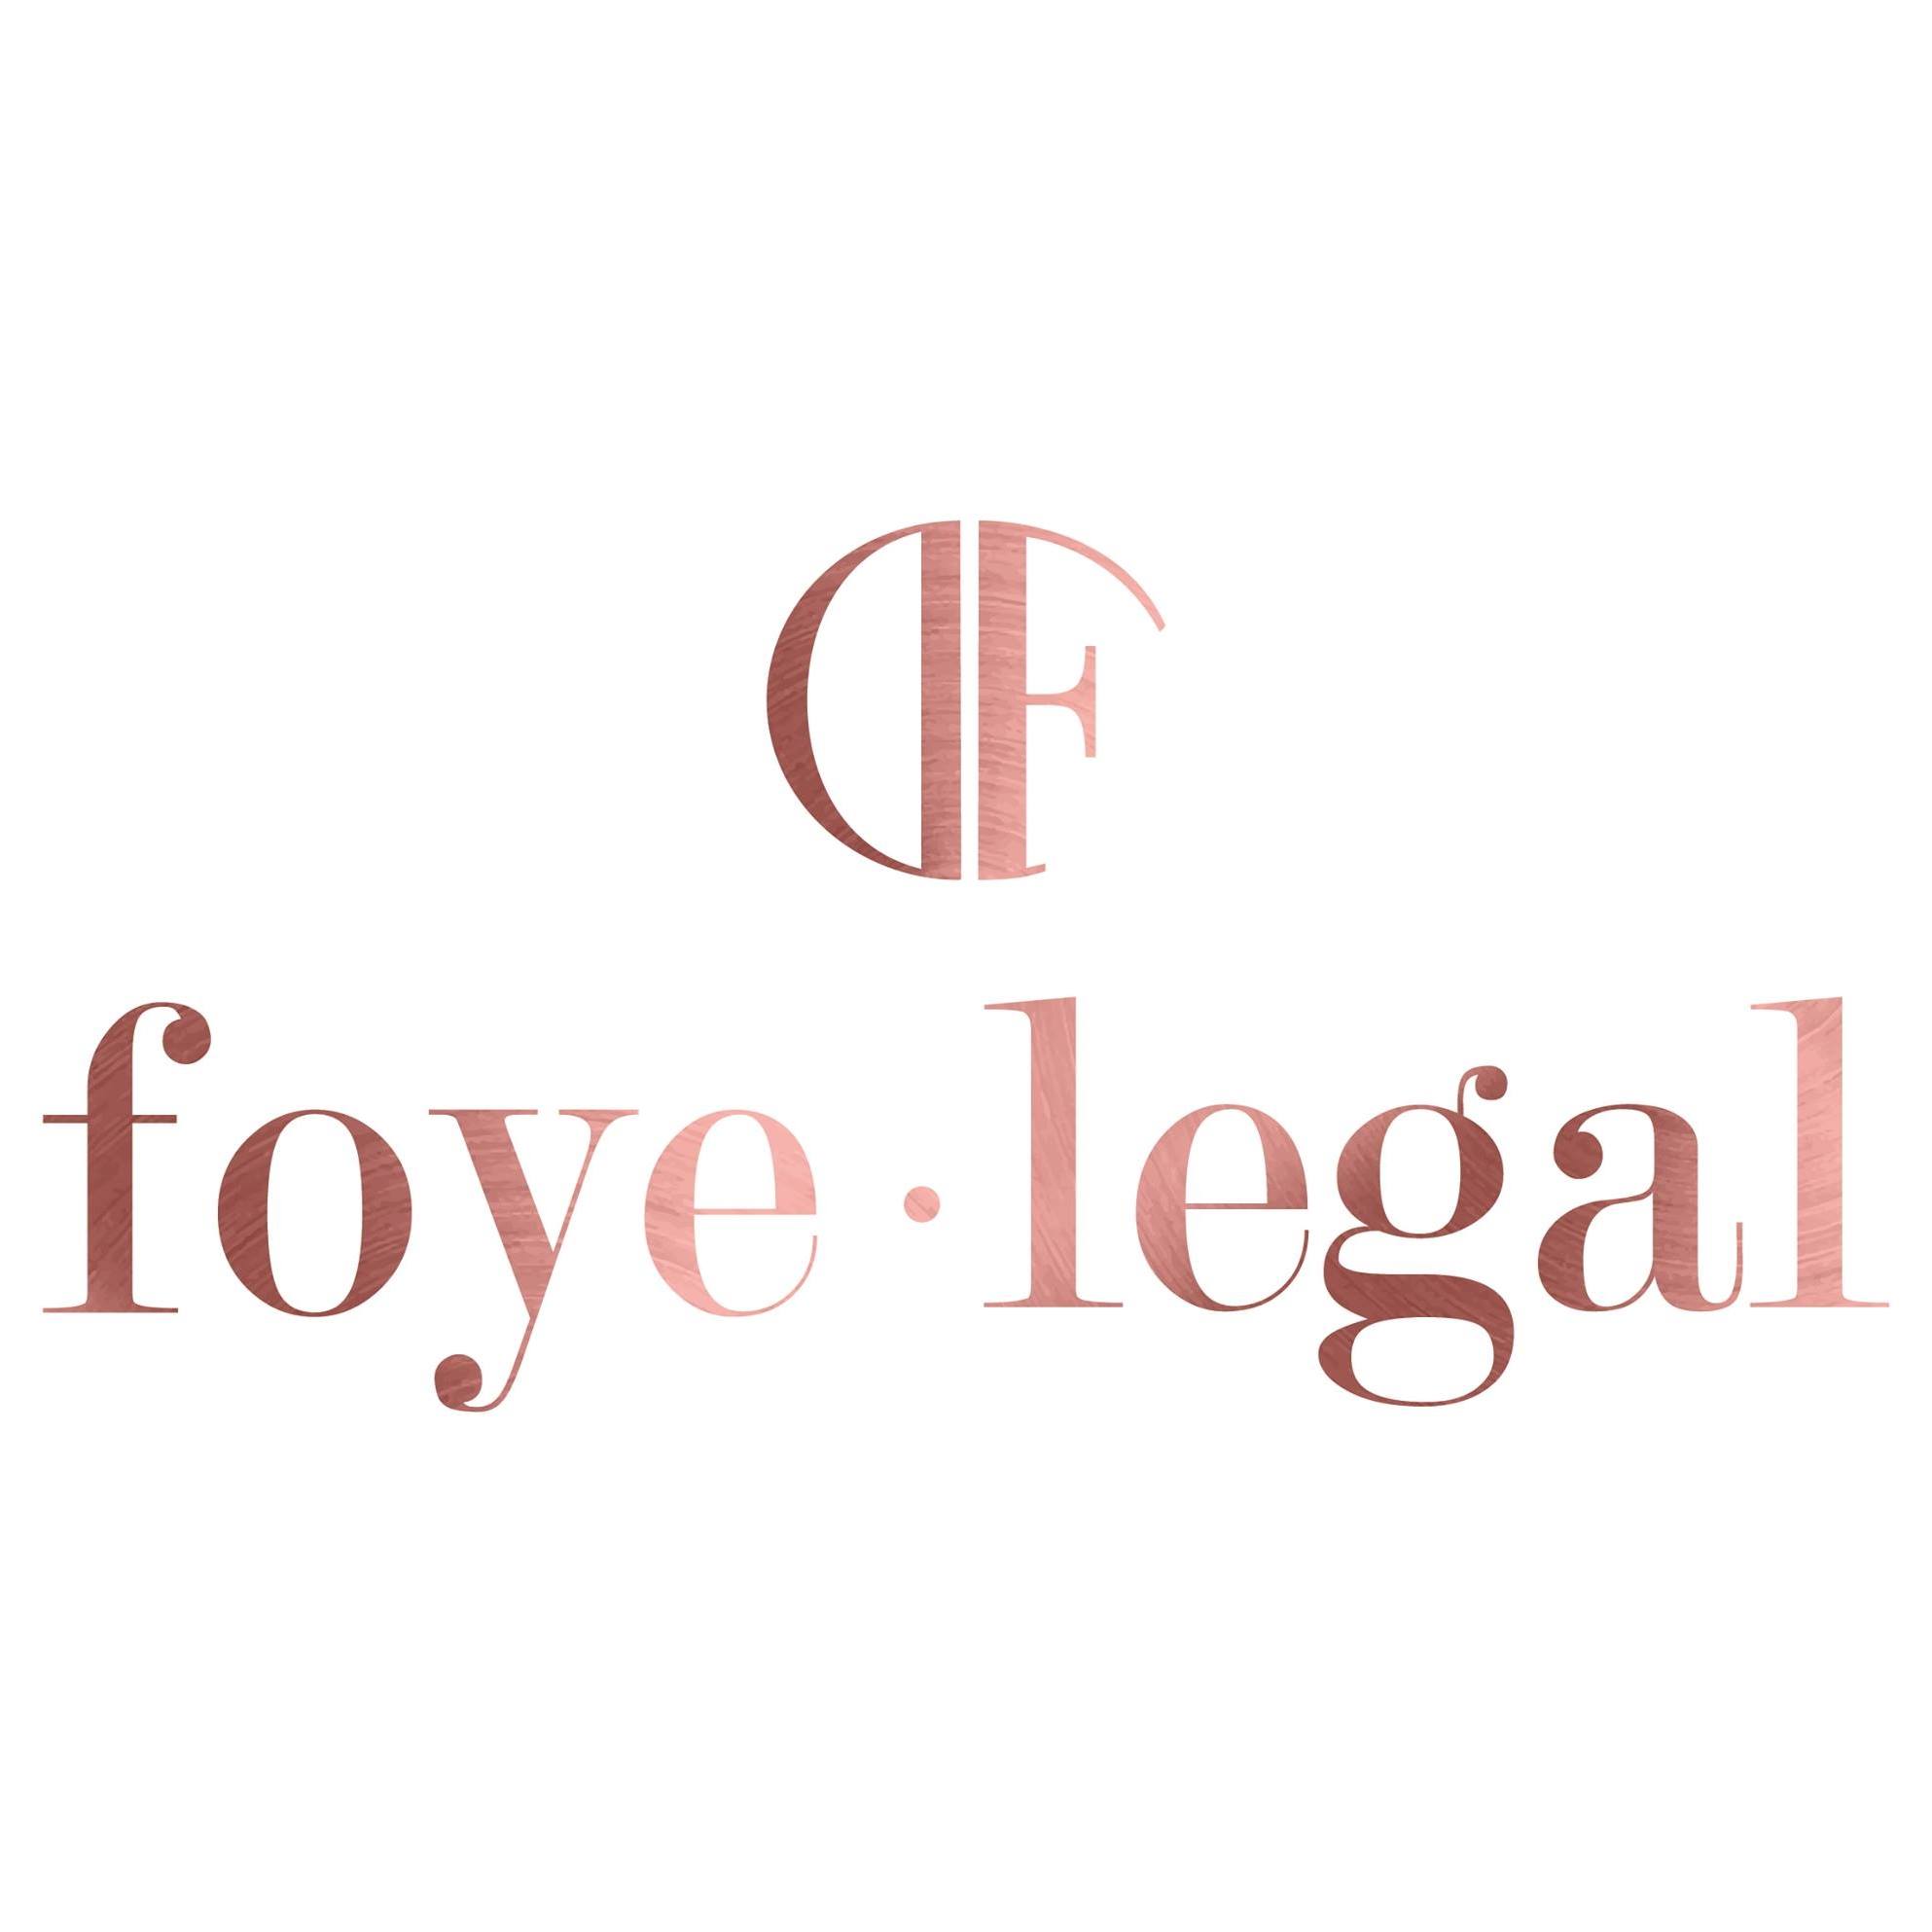 Company logo of Foye Legal